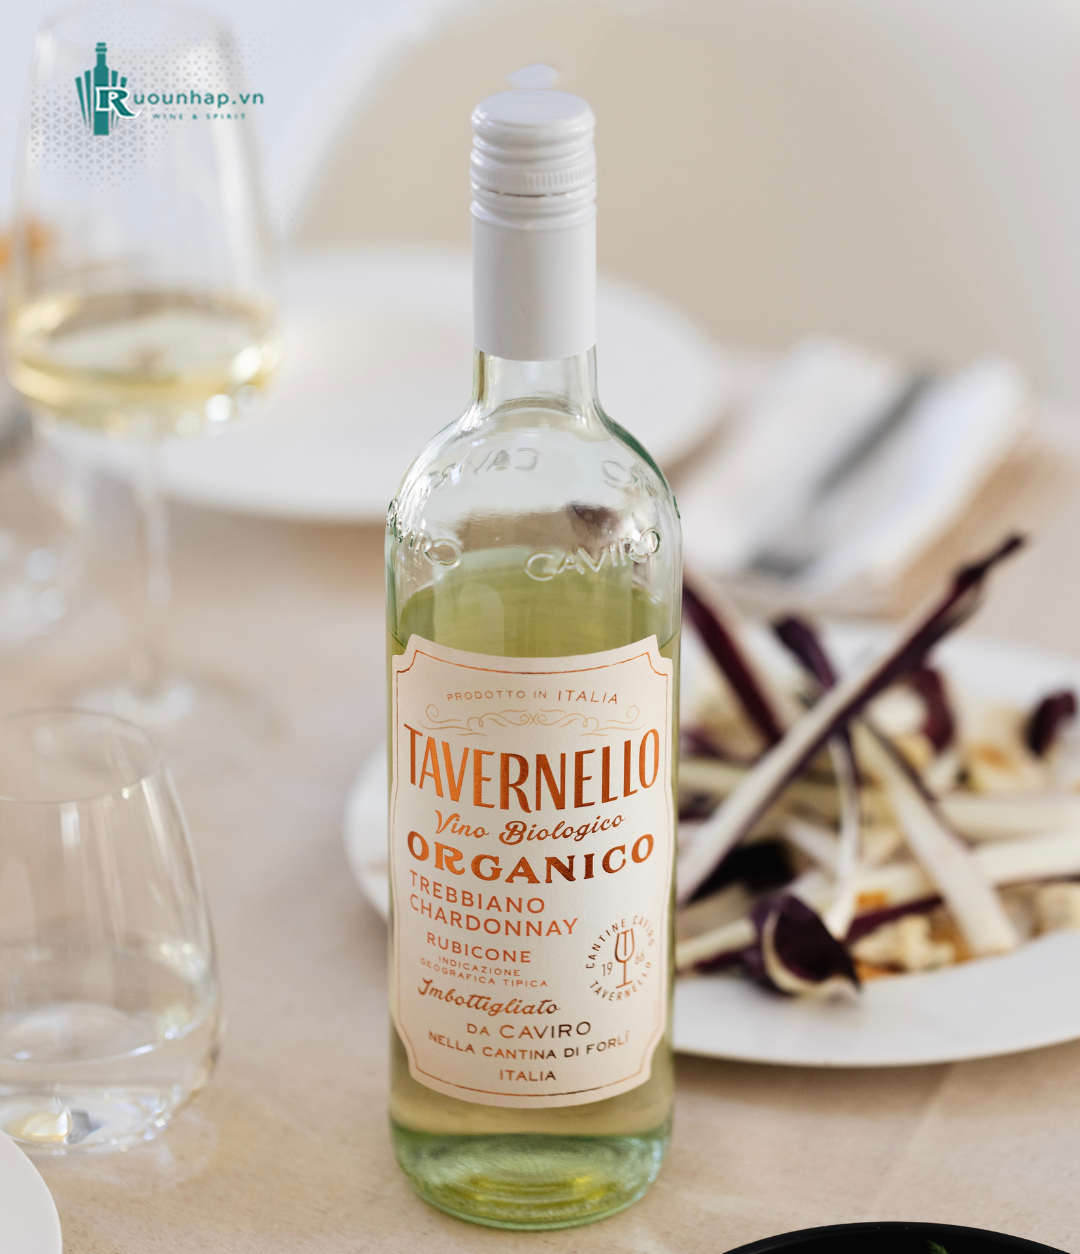 Rượu Vang Tavernello Organico Trebbiano Chardonnay Rubicone